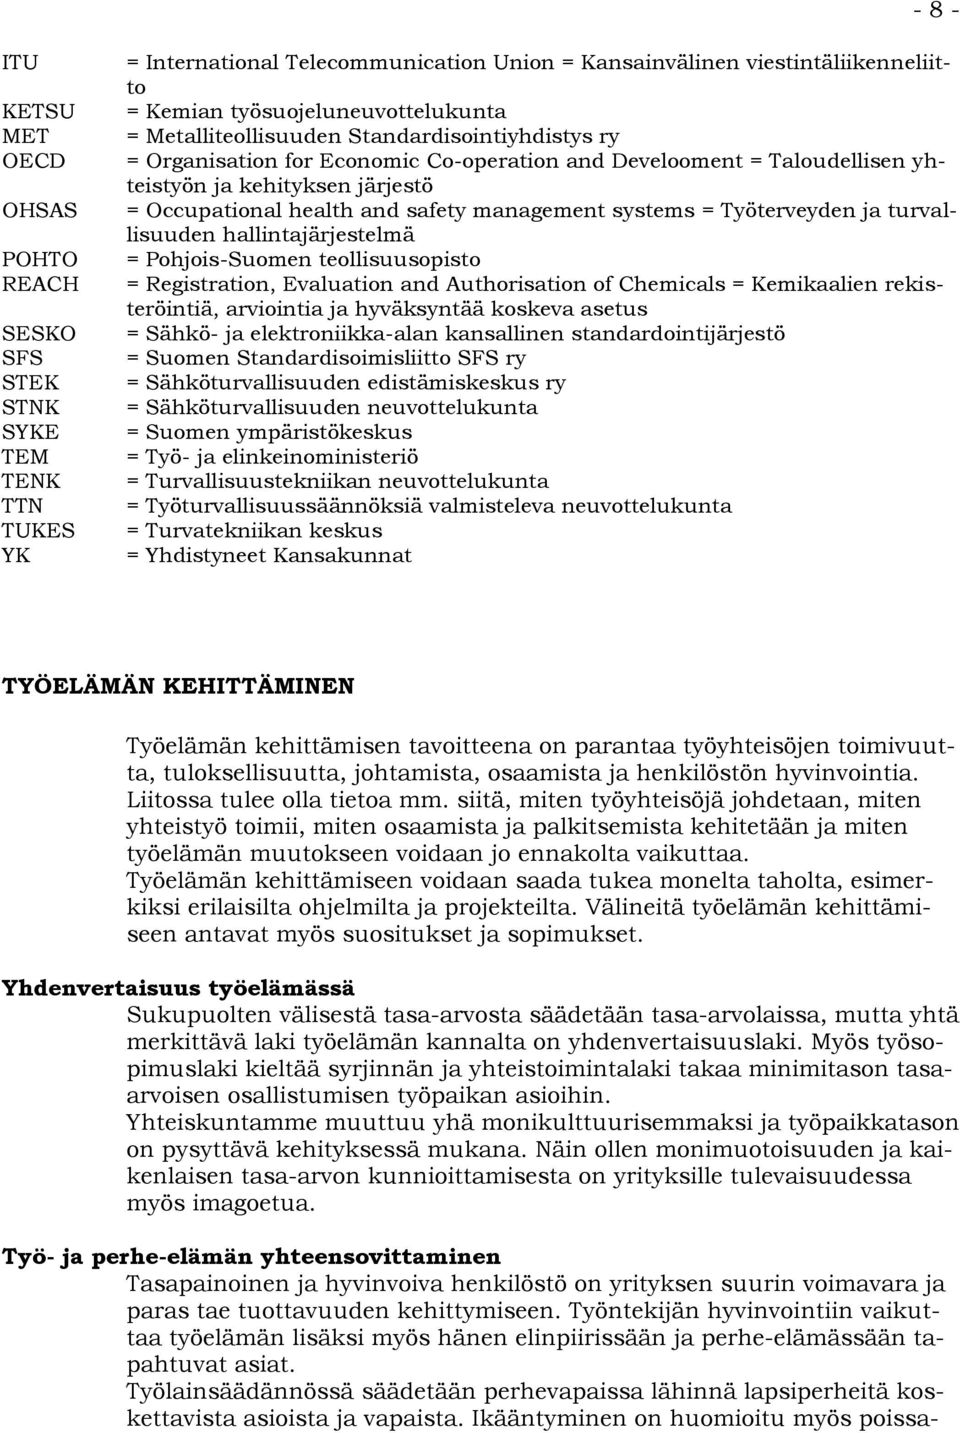 health and safety management systems = Työterveyden ja turvallisuuden hallintajärjestelmä = Pohjois-Suomen teollisuusopisto = Registration, Evaluation and Authorisation of Chemicals = Kemikaalien